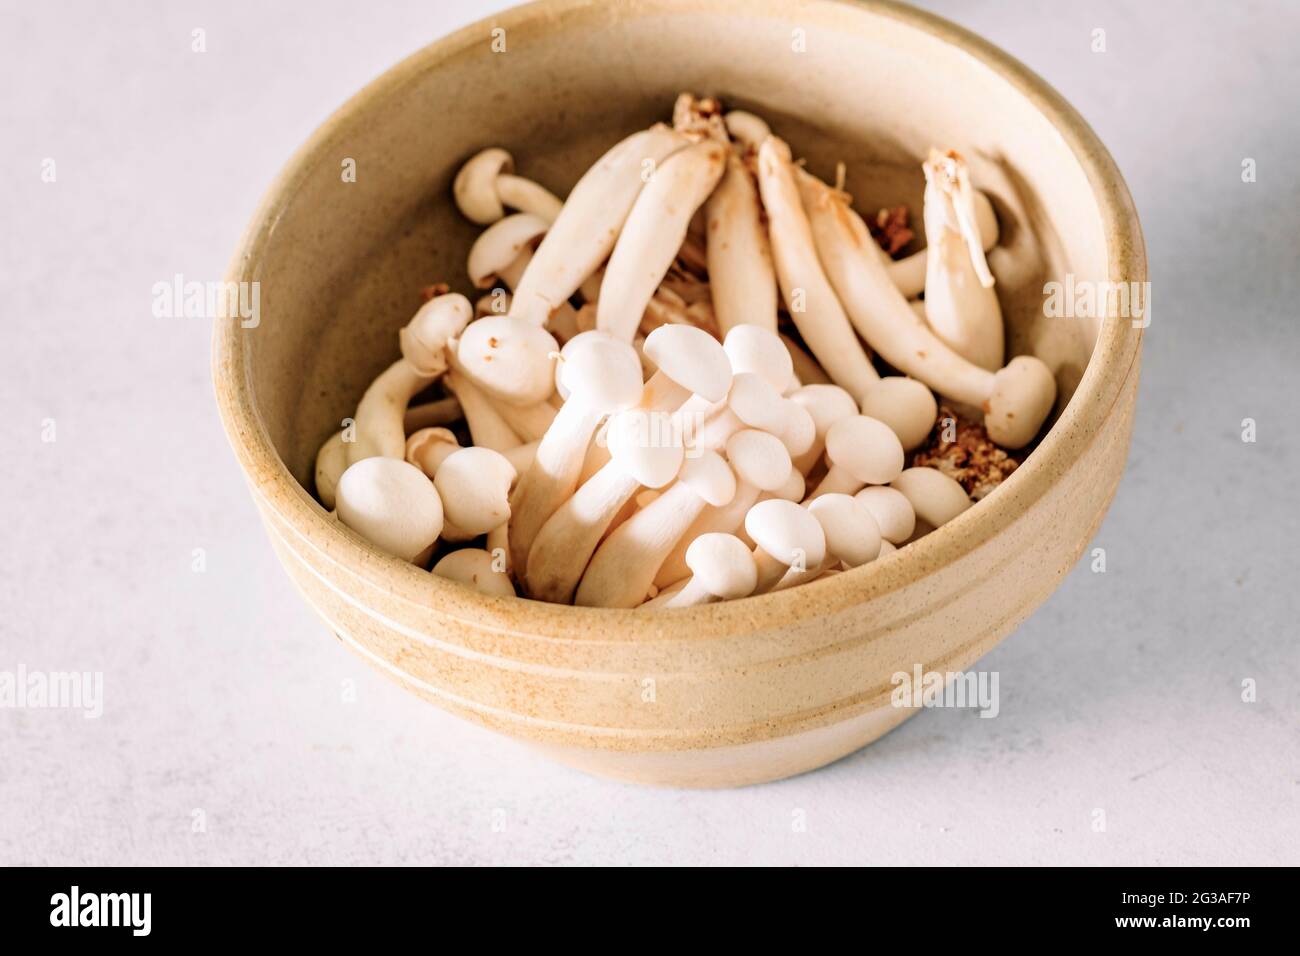 Champignon Enoki asiatique blanc, nourriture végétarienne brute, champignon, gros plan Banque D'Images